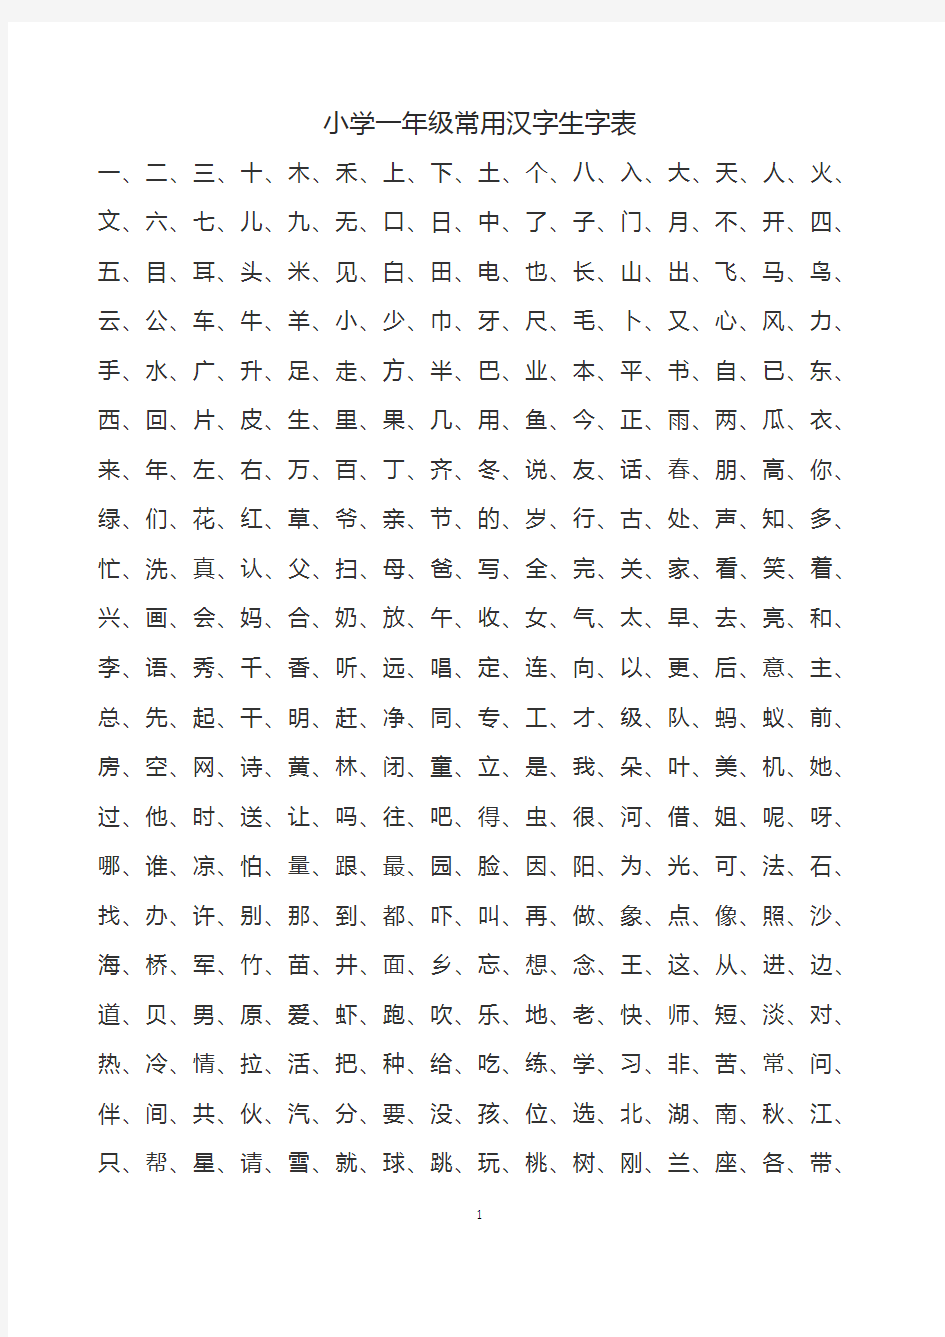 小学1-6年级常用汉字生字表,A4打印版